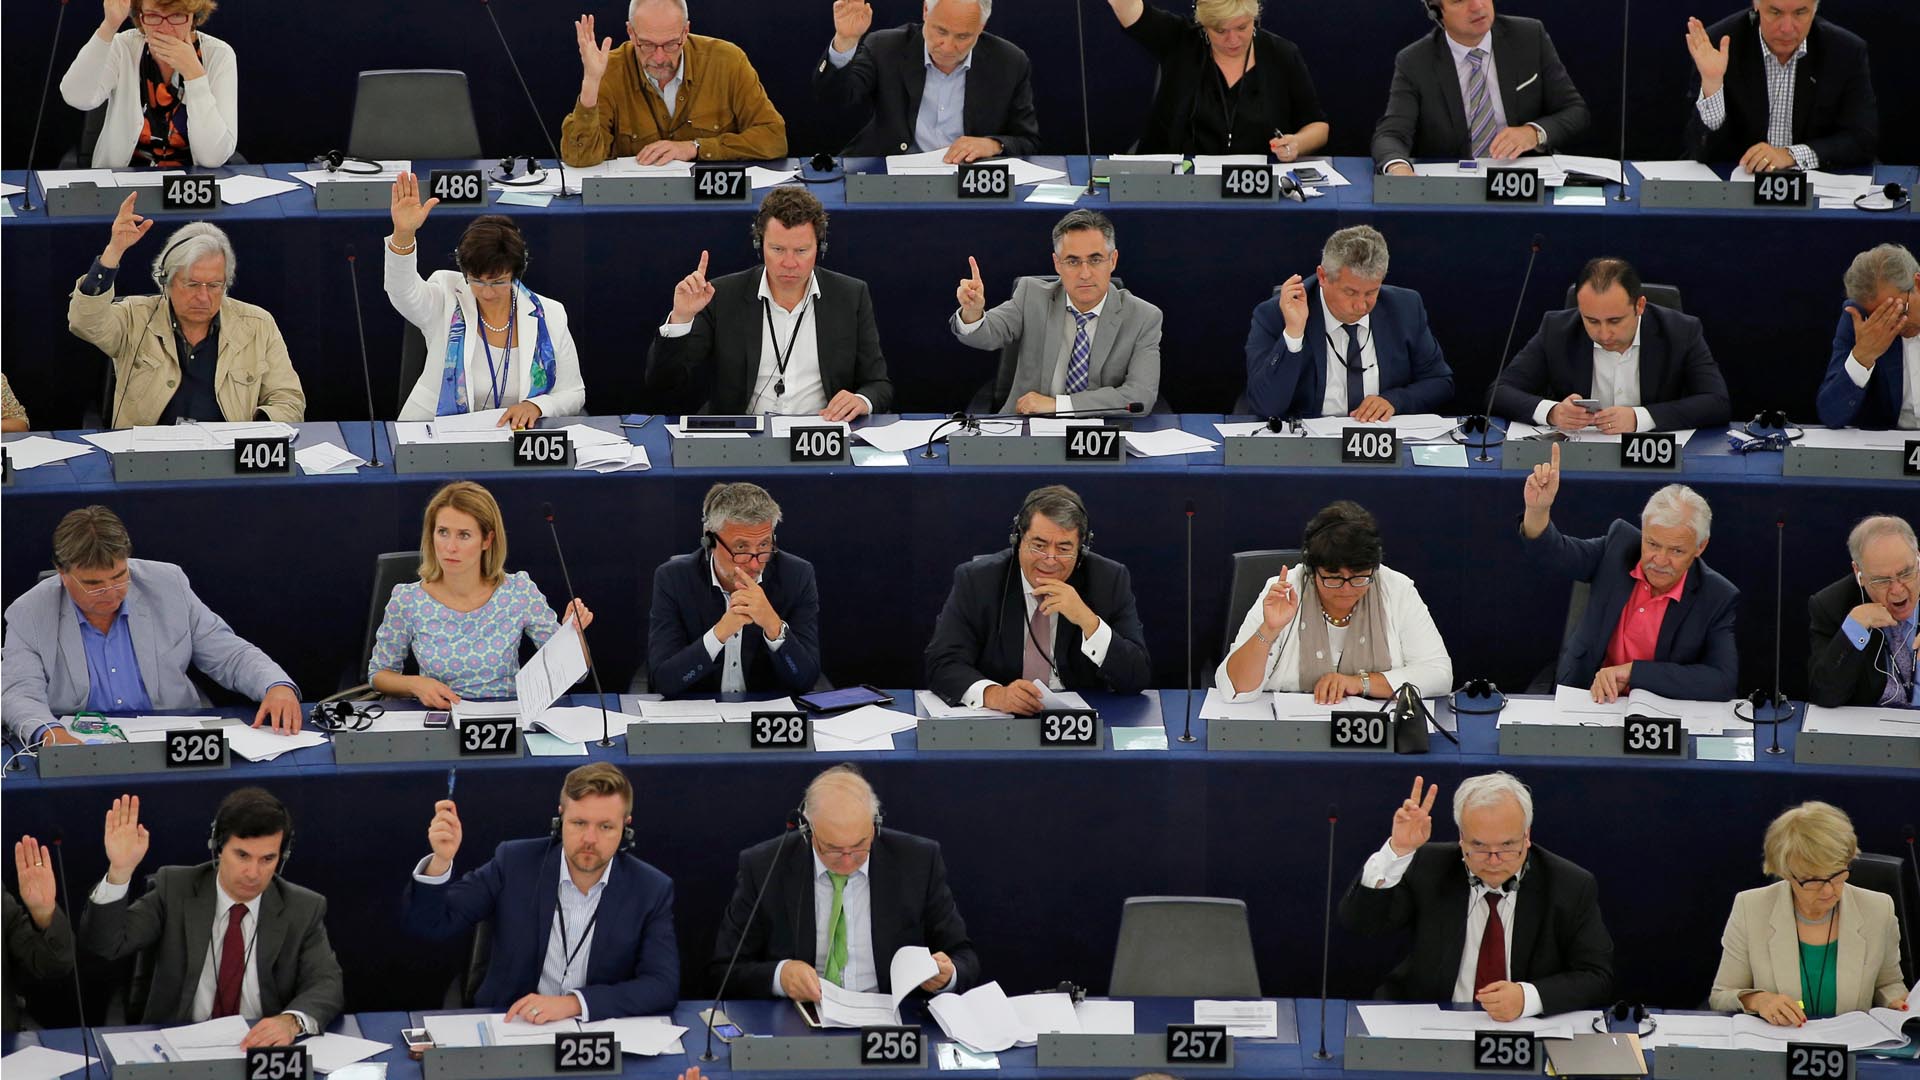 Eurodiputados instaron al Gobierno a adoptar reformas económicas eficaces de la mano de todos los poderes públicos